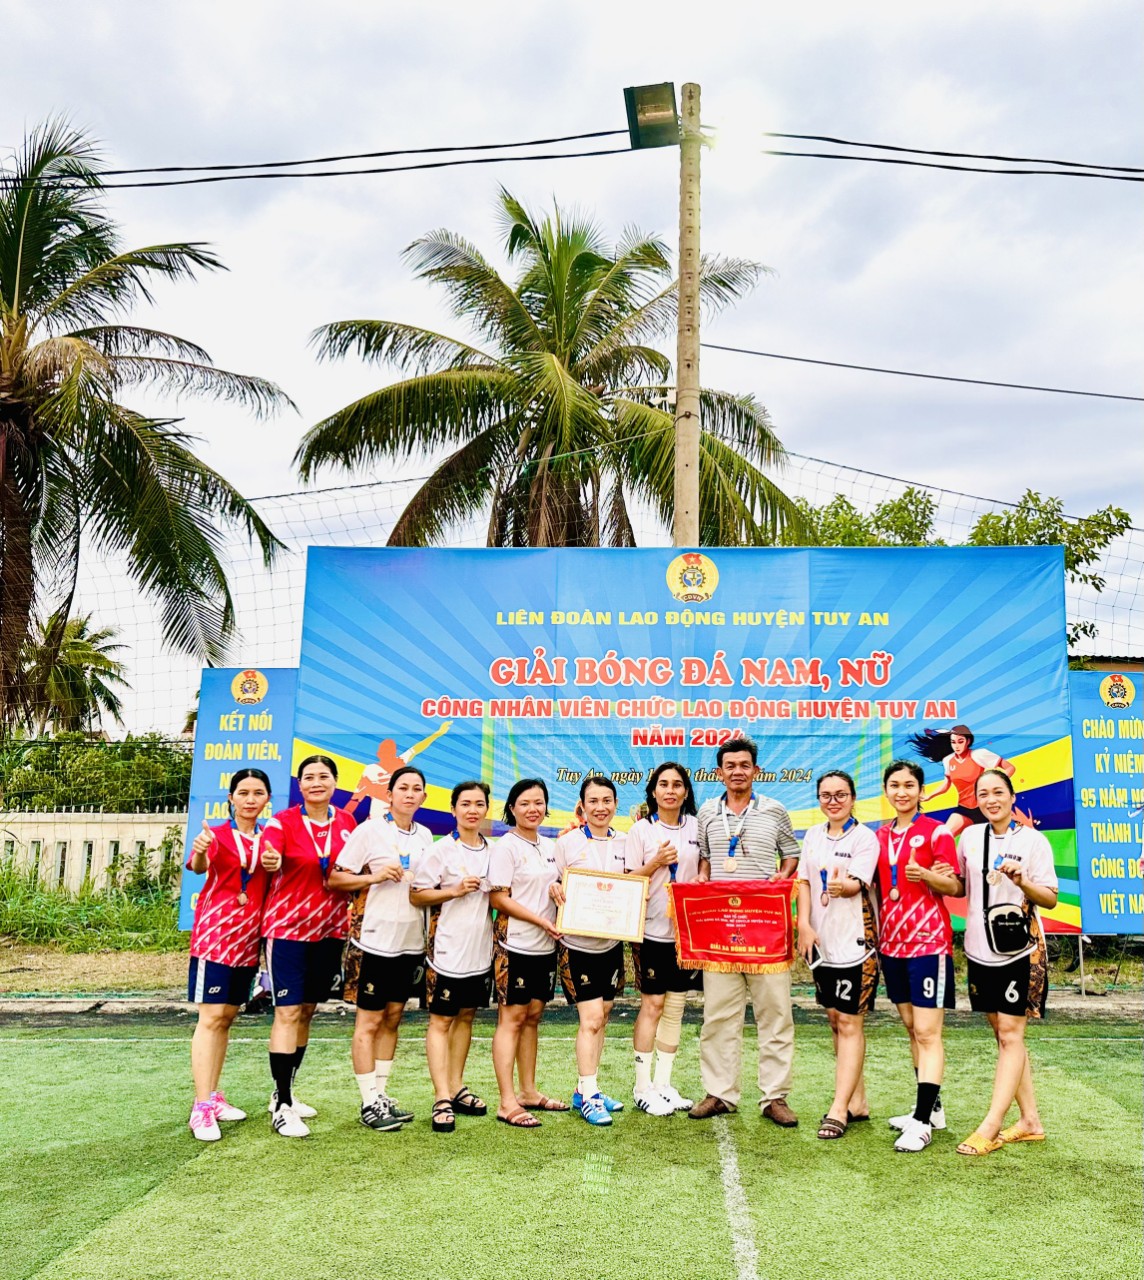 Trung tâm Y tế Tuy An tham gia giải bóng đá nam, nữ năm 2024